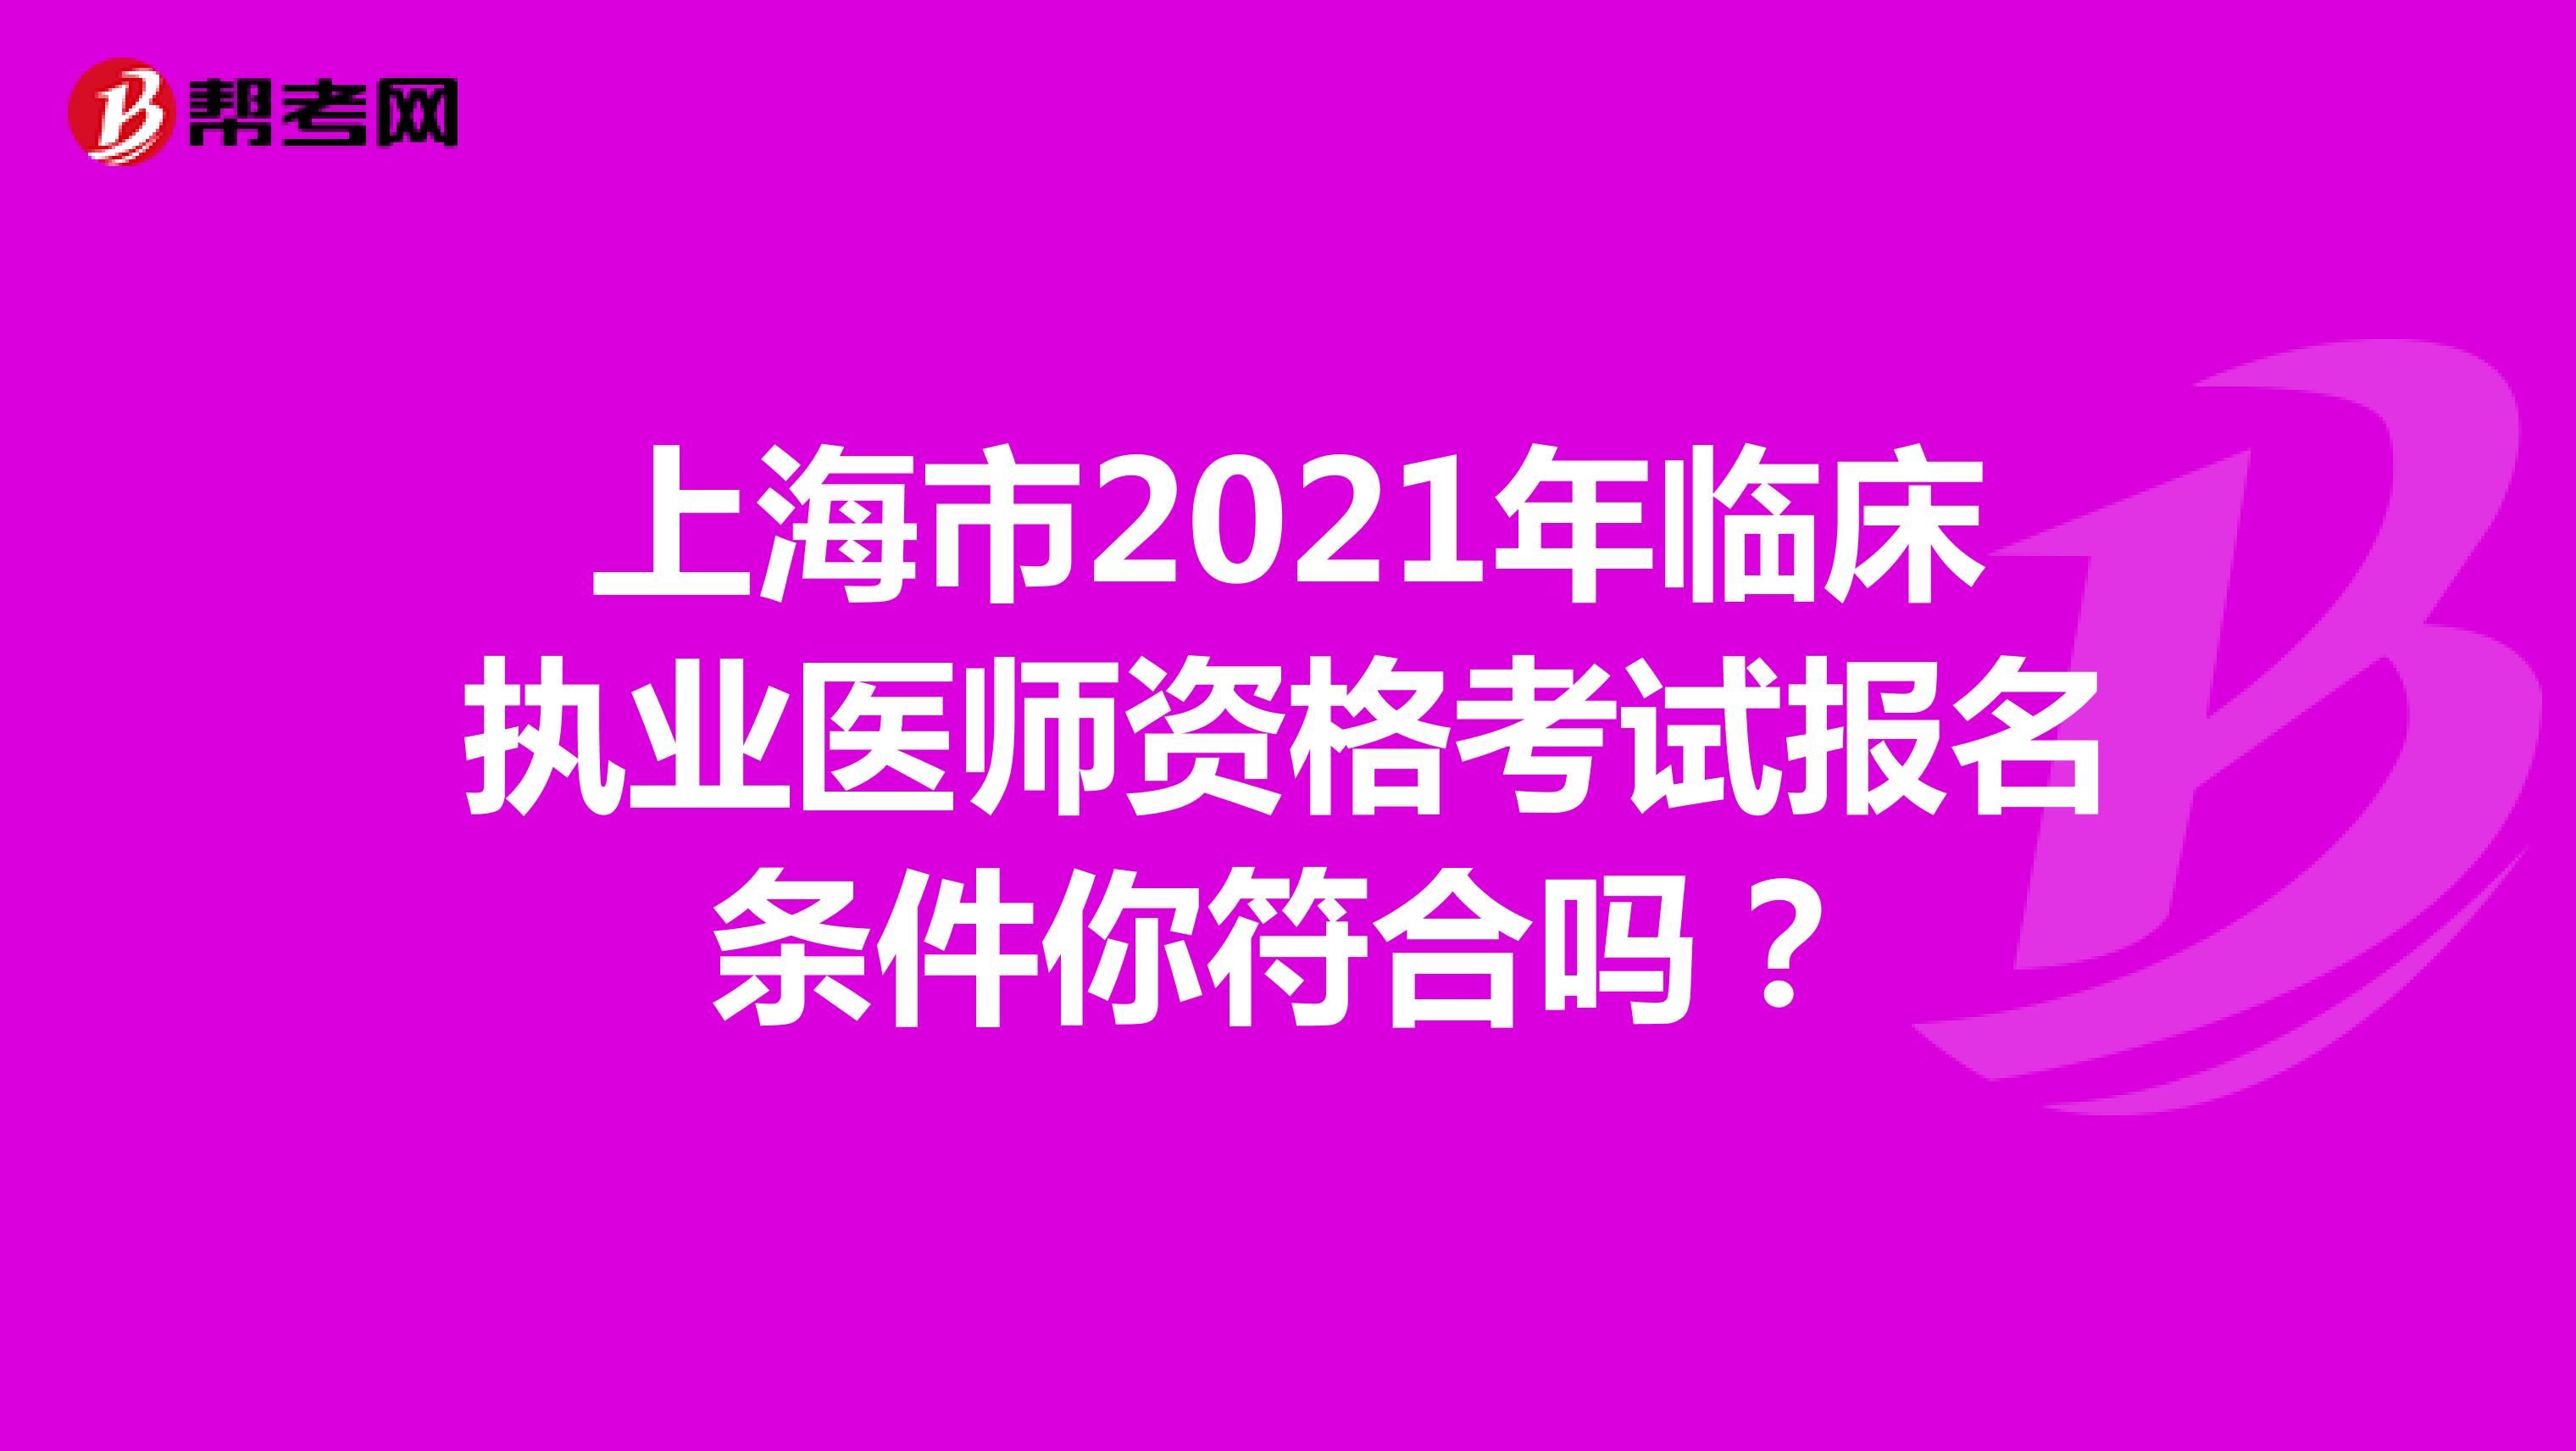 上海市2021年临床执业医师资格考试报名条件你符合吗？